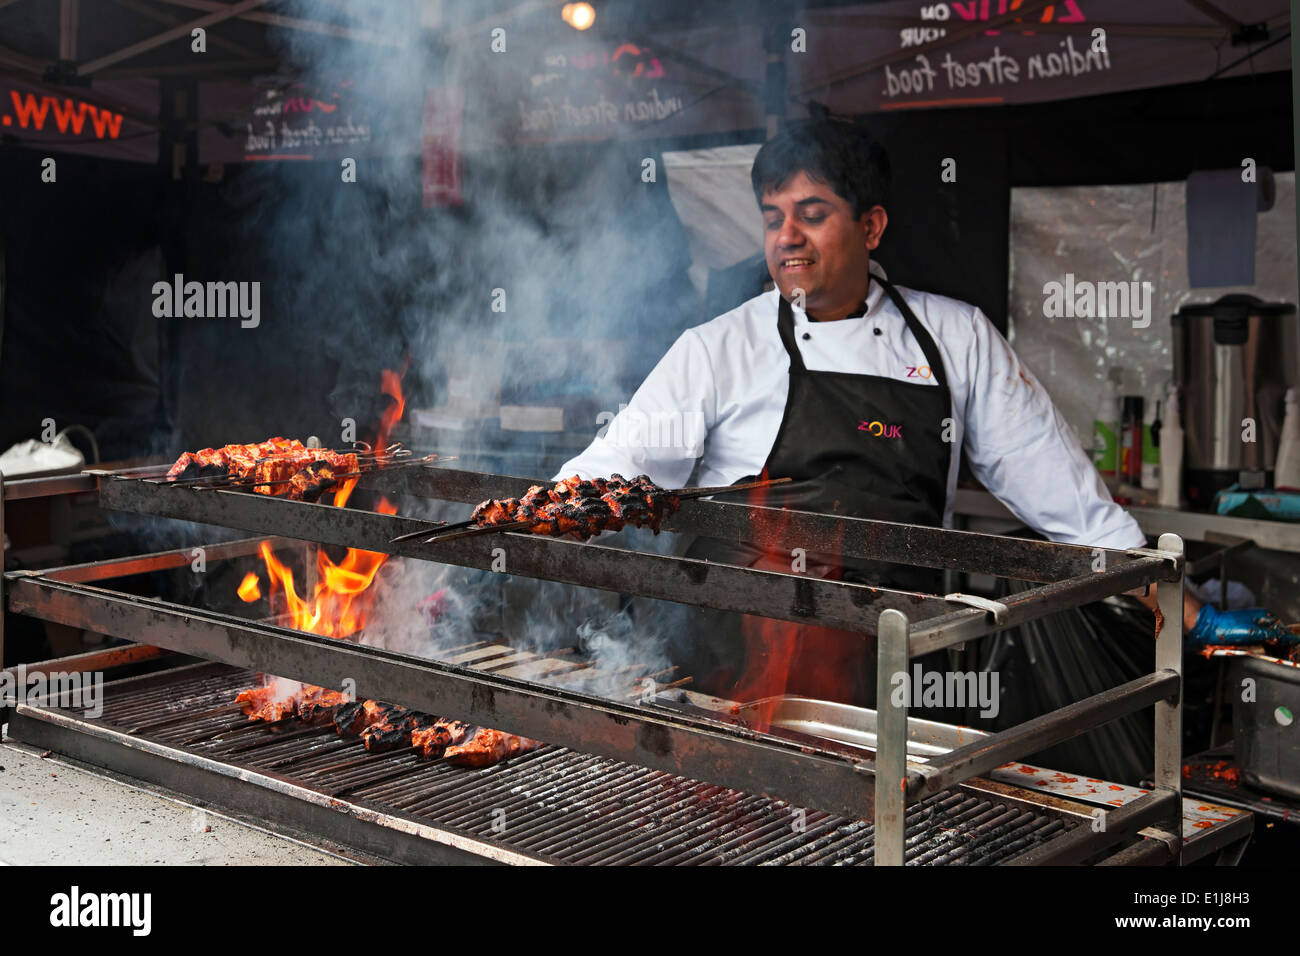 Homme chef cuisant de la viande sur un grill flammes cuisine indienne rue stand York North Yorkshire Angleterre Royaume-Uni Grande-Bretagne Banque D'Images